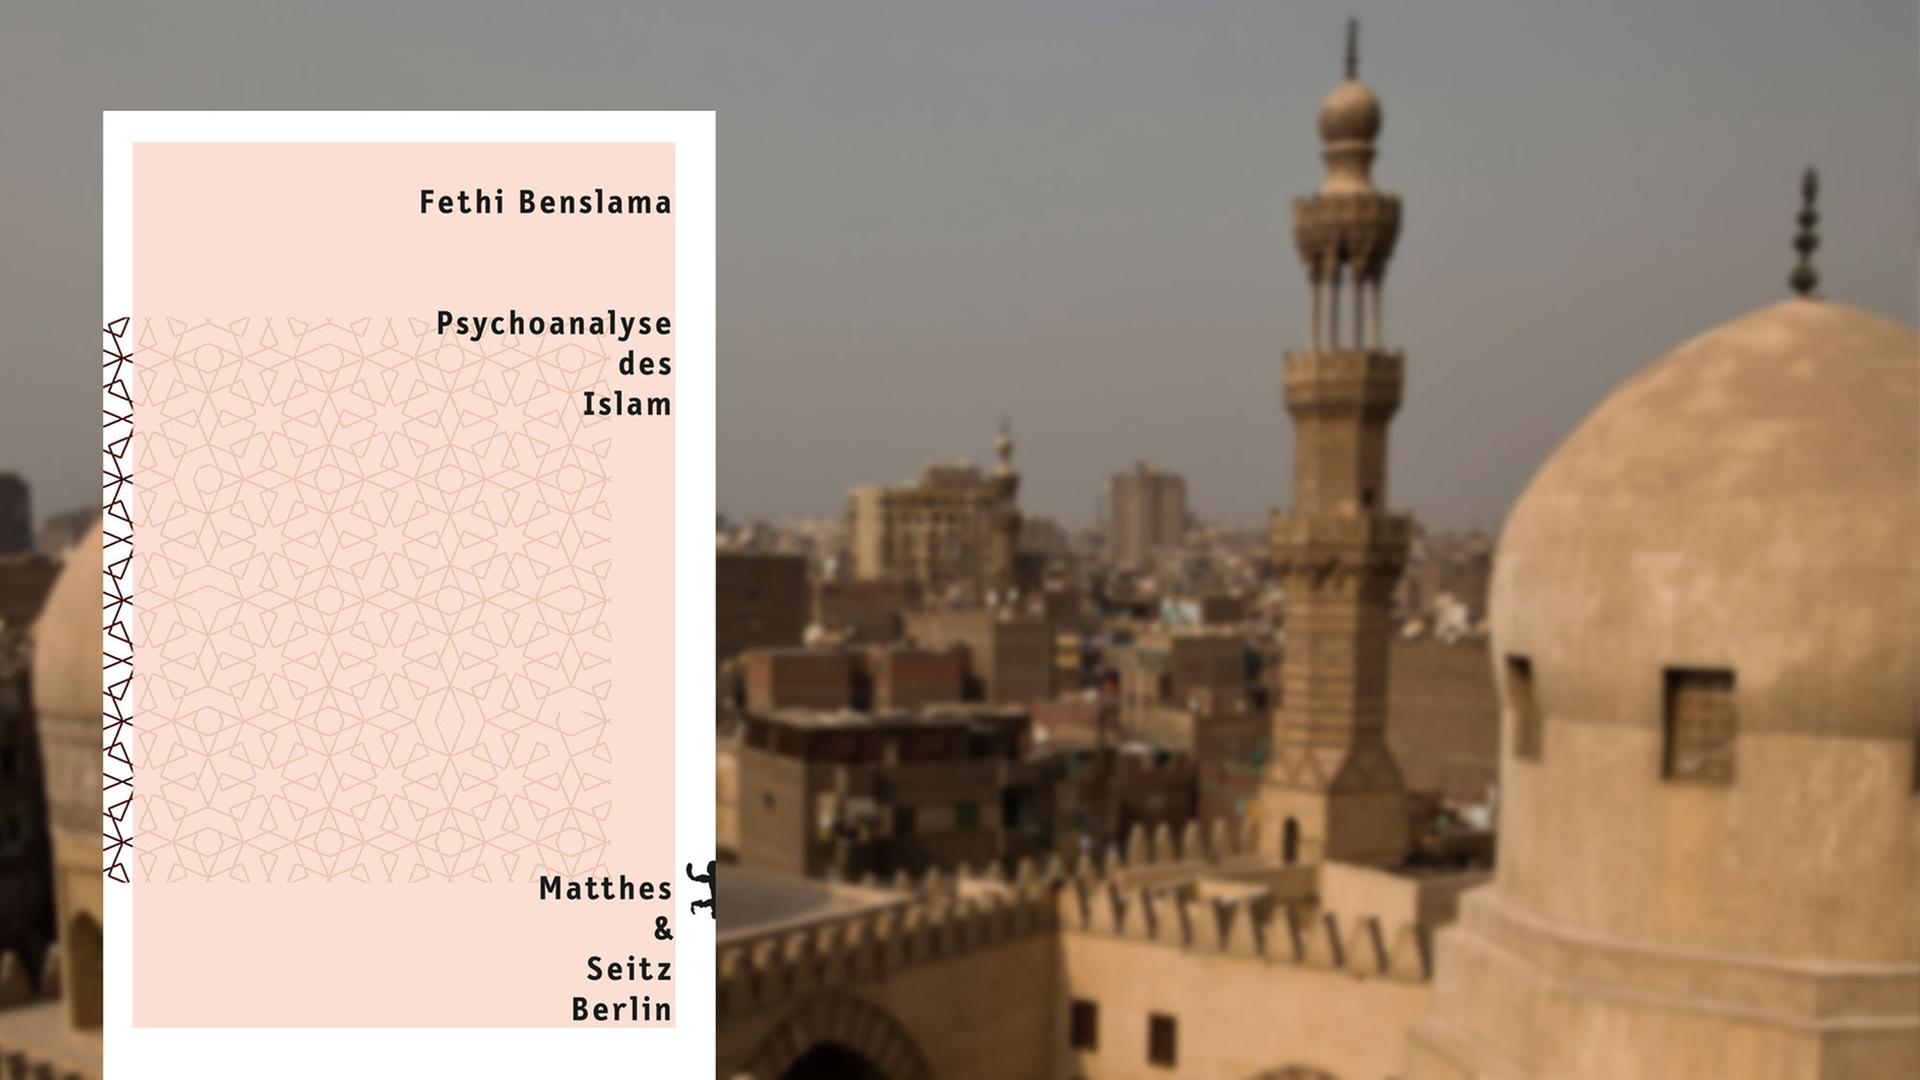 Buchcover "Psychoanalyse des Islam" von Fethi Benslama, im Hintergrund die Ibn Tulun Moschee in Kairo